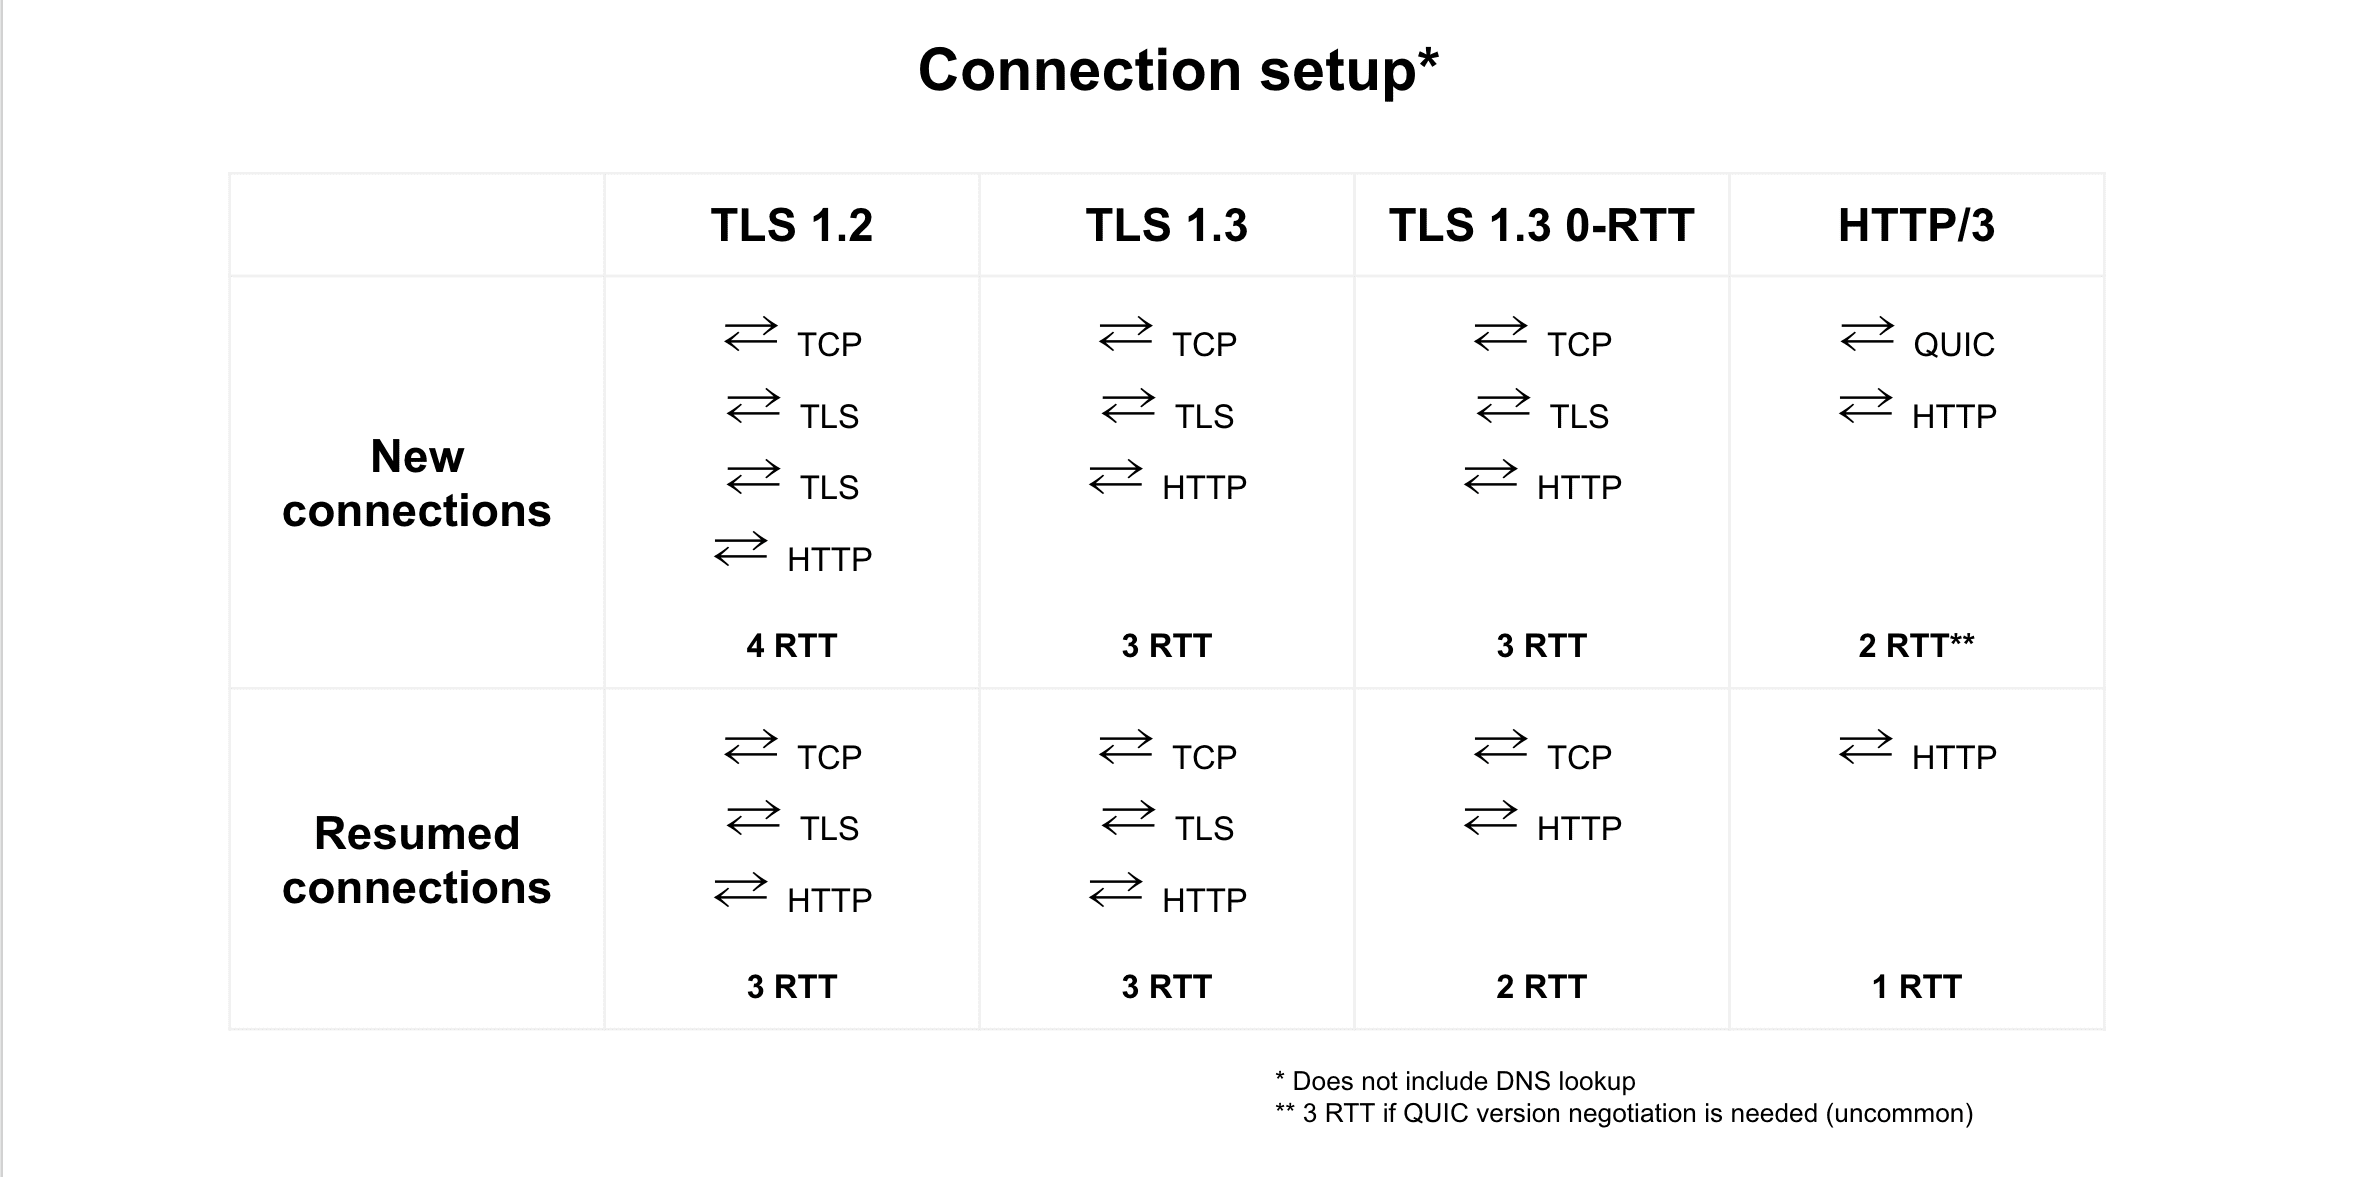 Comparaison de la reprise de connexion entre TLS 1.2, TLS 1.3, TLS 1.3 0-RTT et HTTP/3